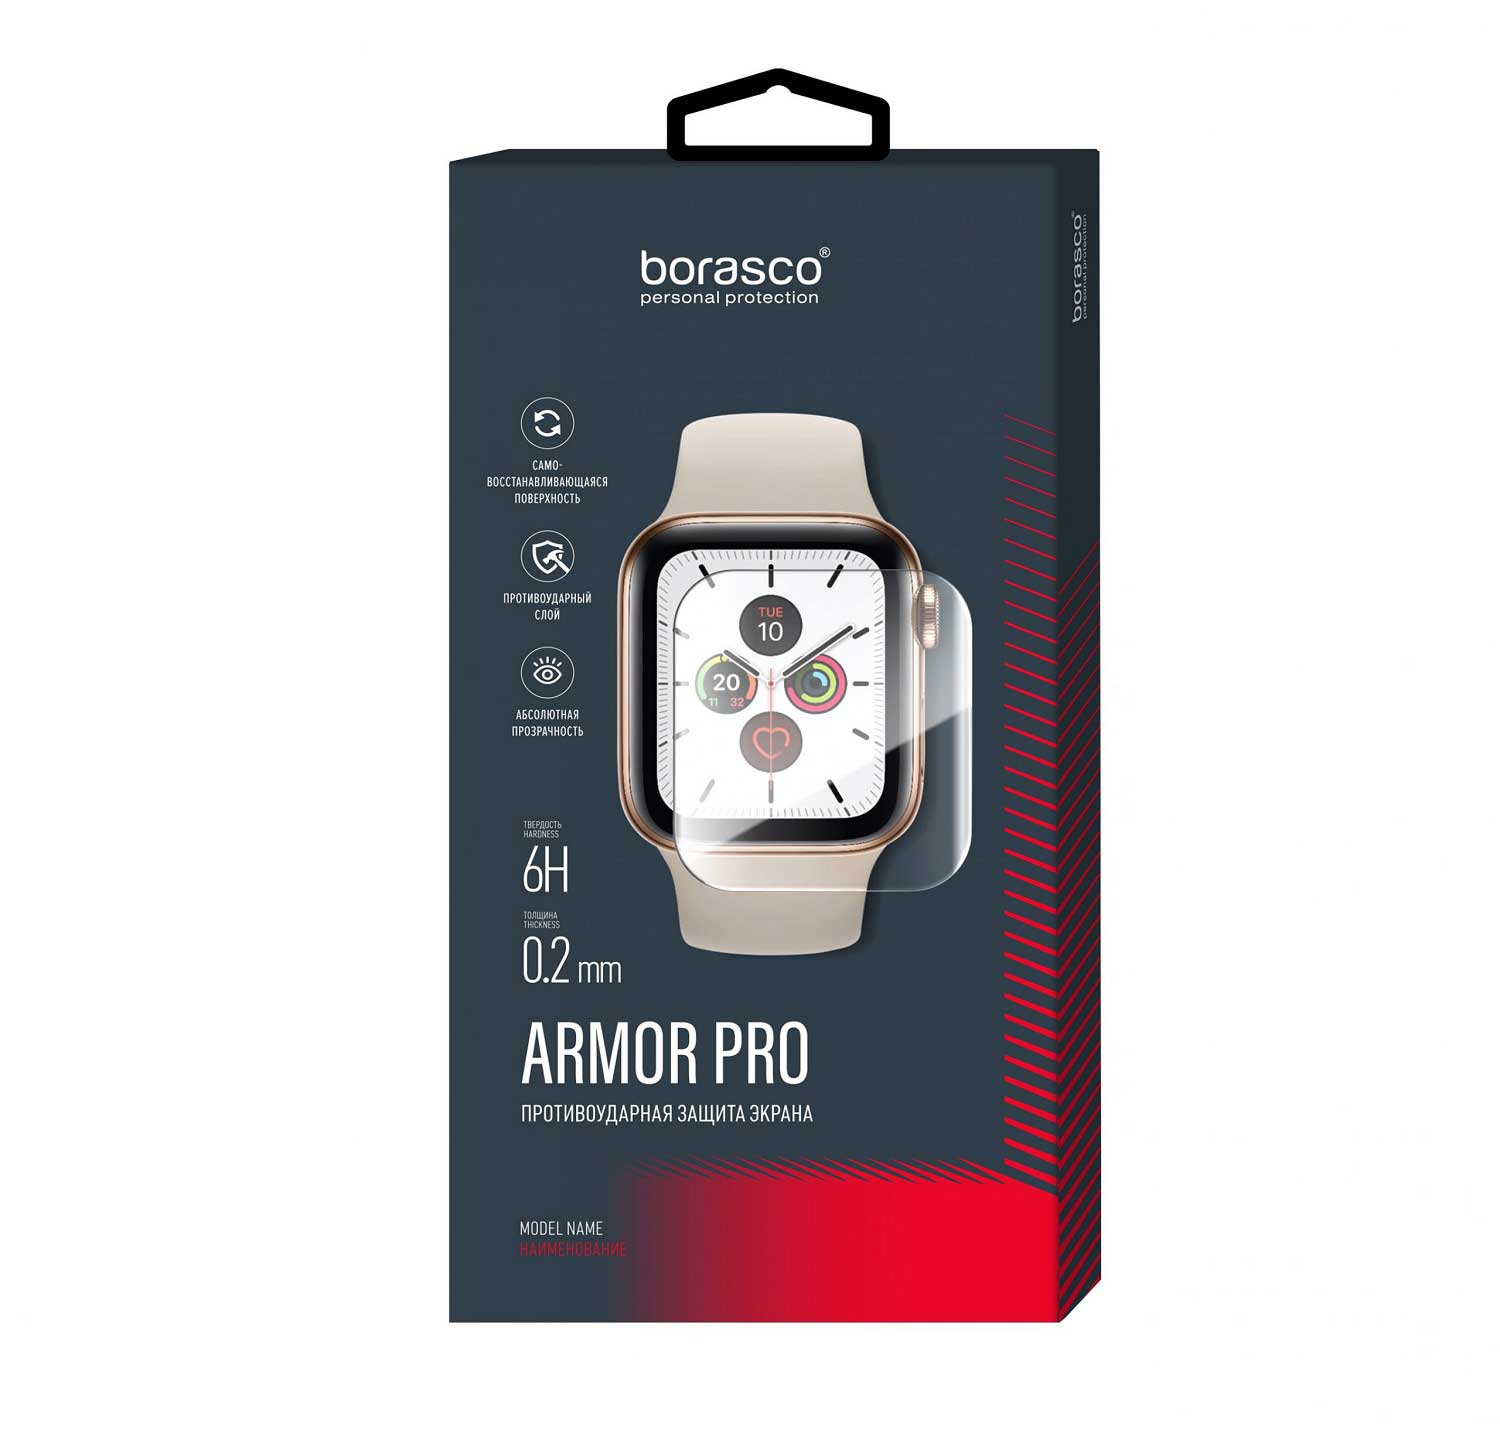 Защита экрана BoraSCO Armor Pro для Xiaomi Mi Band 3 матовый защита экрана borasco armor pro для honor band 3 матовый